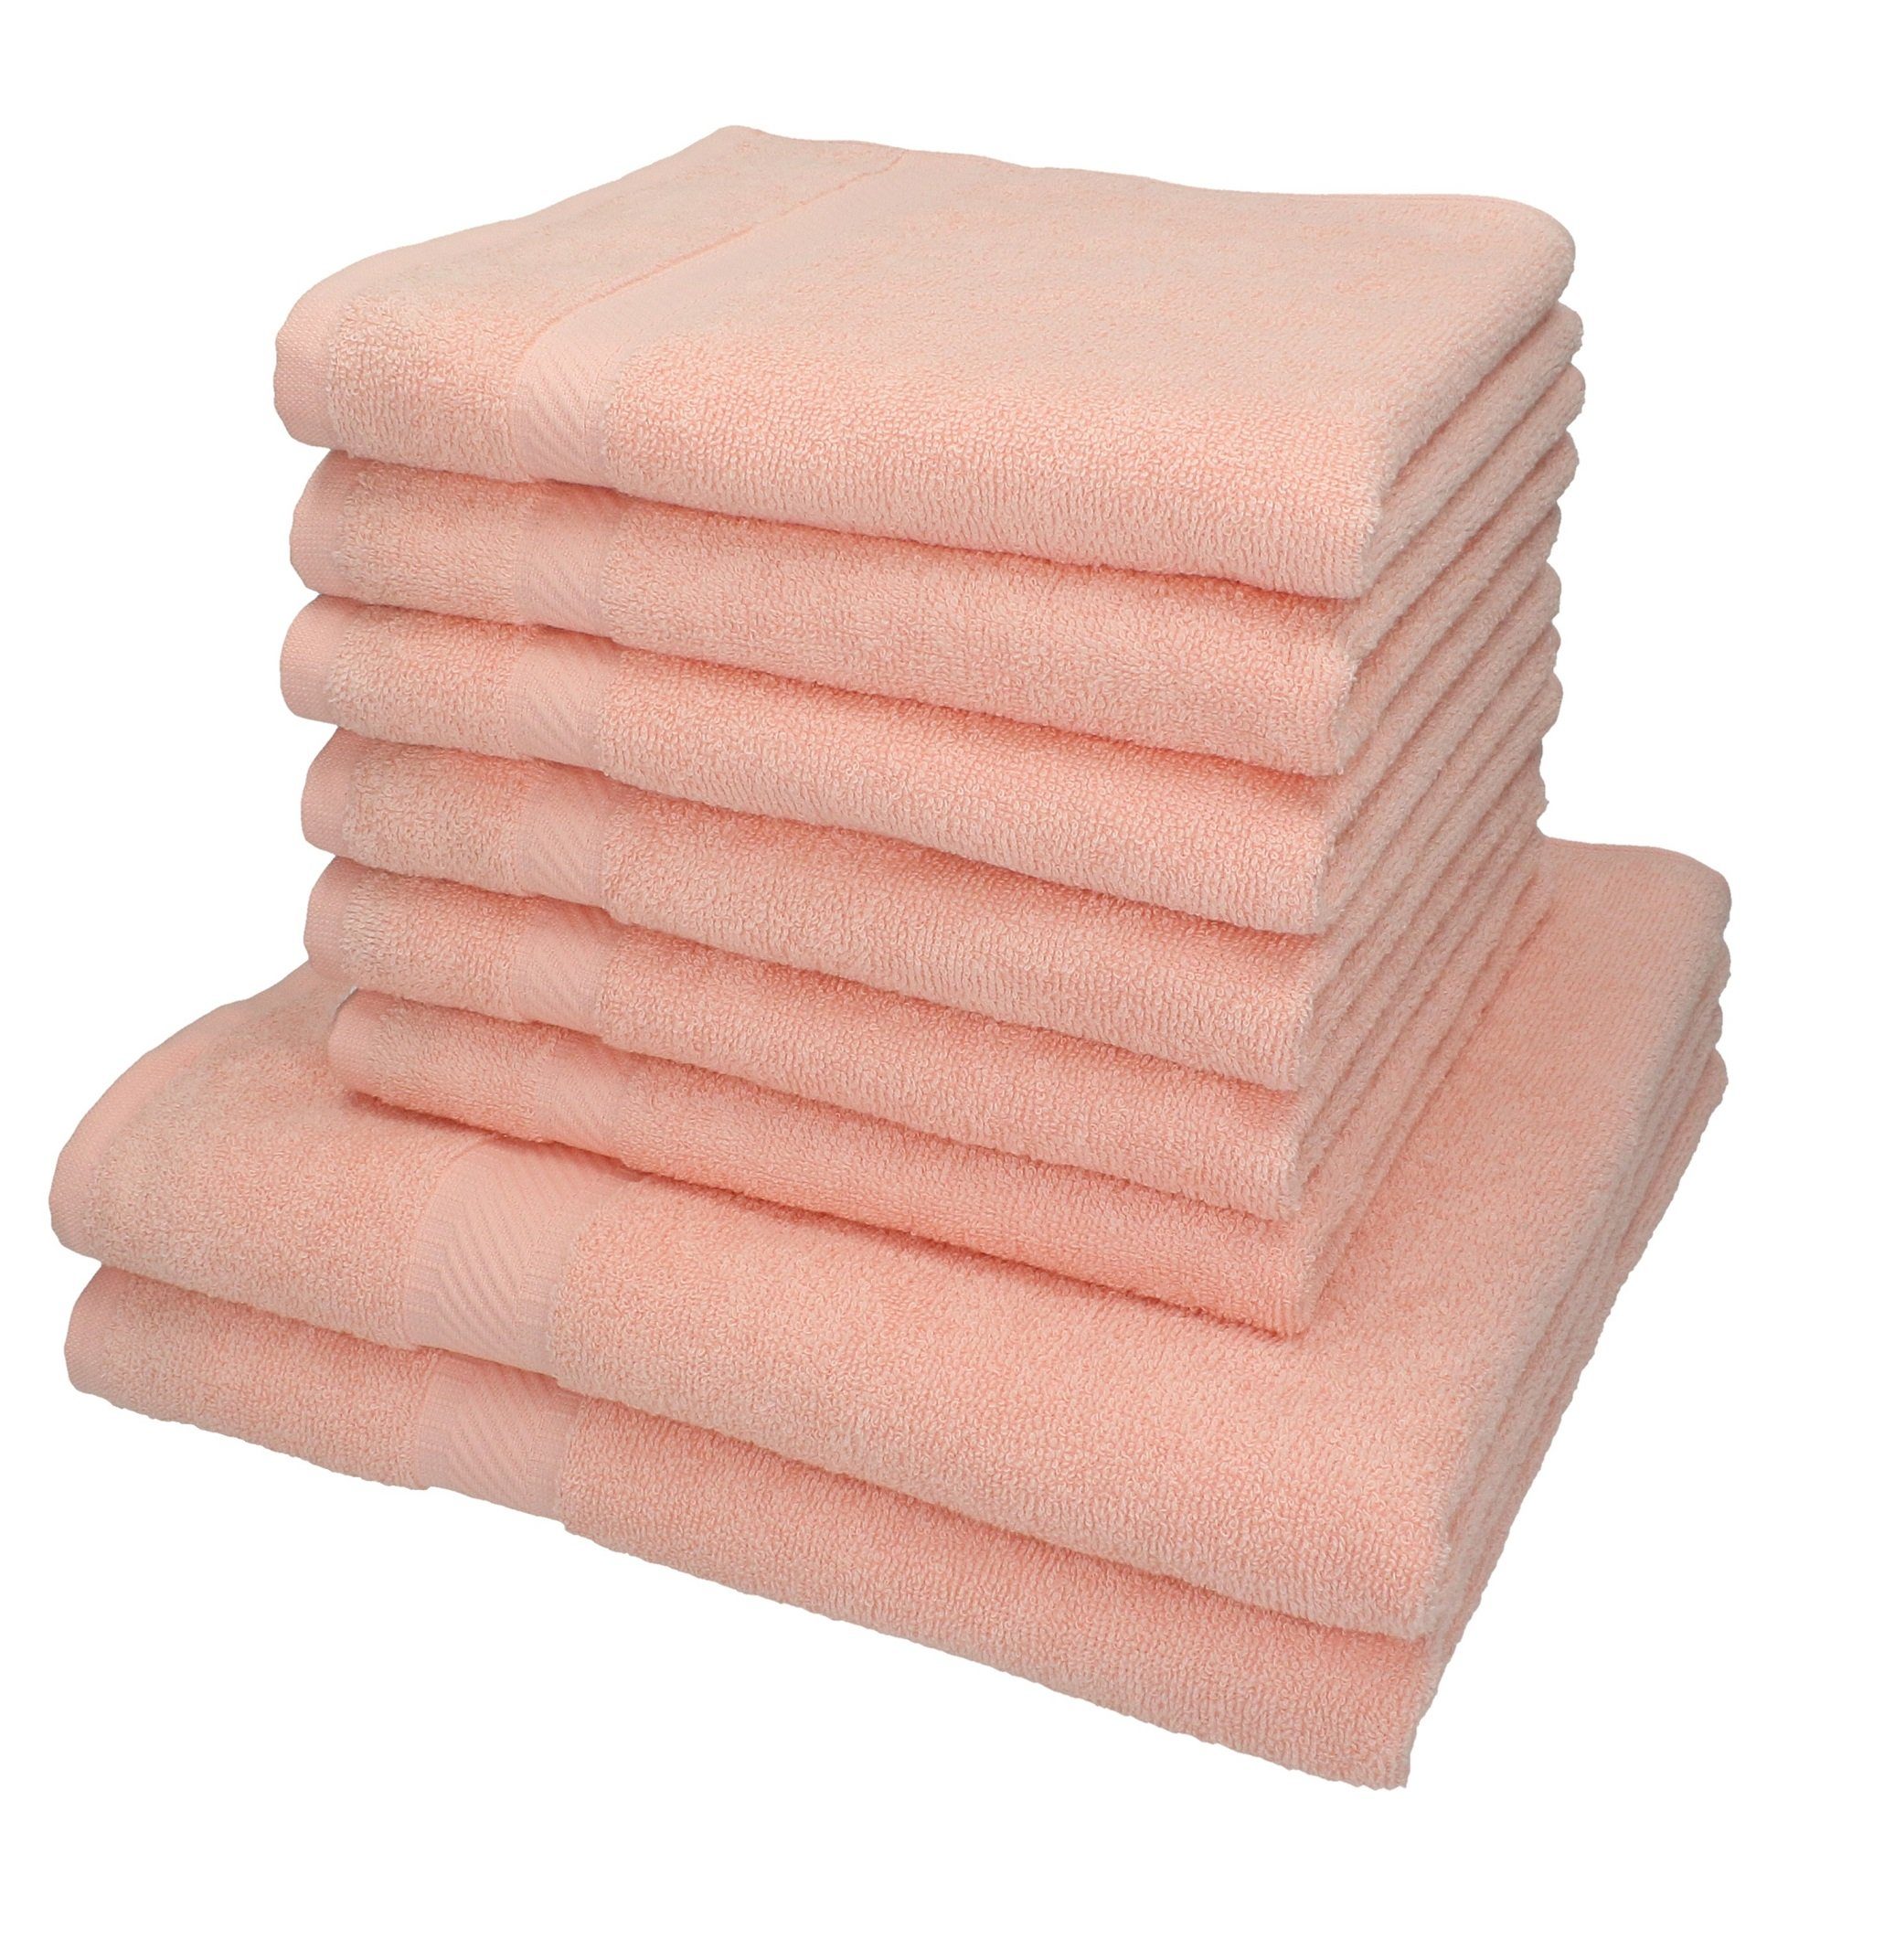 Betz Handtuch Set Handtuch-Set Baumwolle apricot, 100% 8-TLG. Palermo Farbe